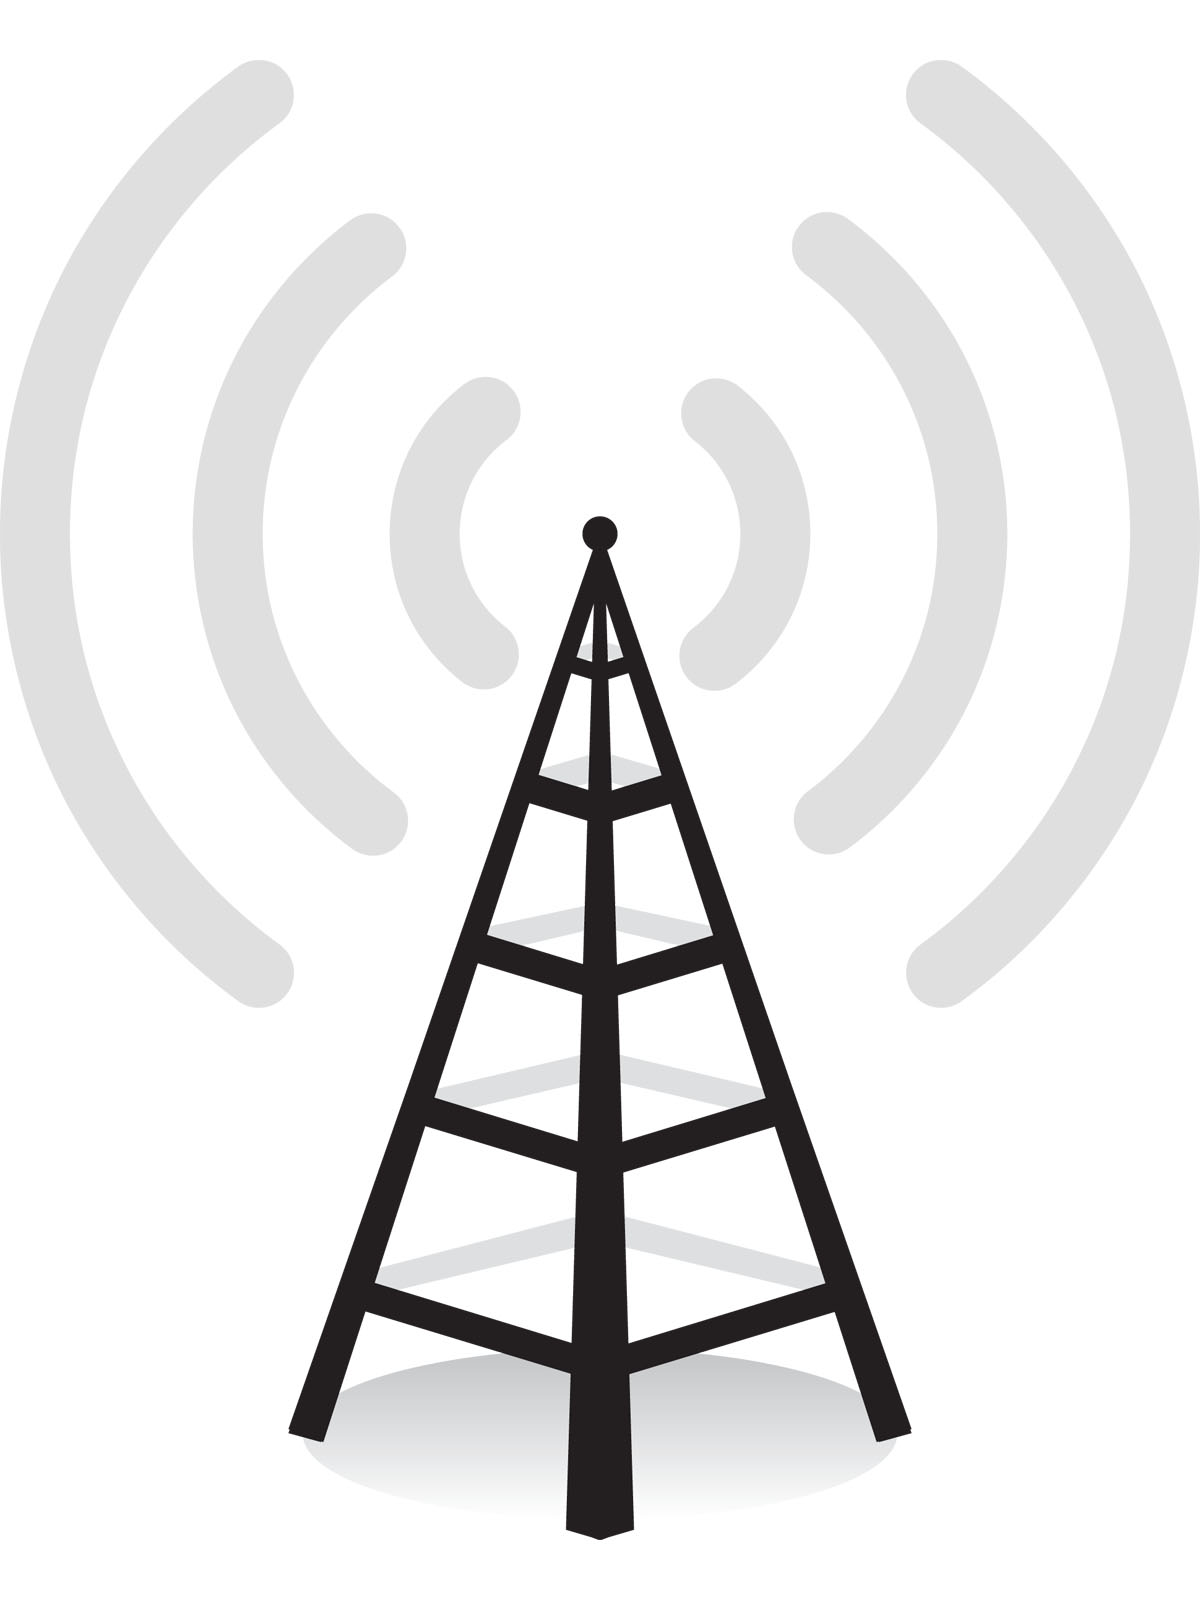 Free white radio tower icon - Download white radio tower icon